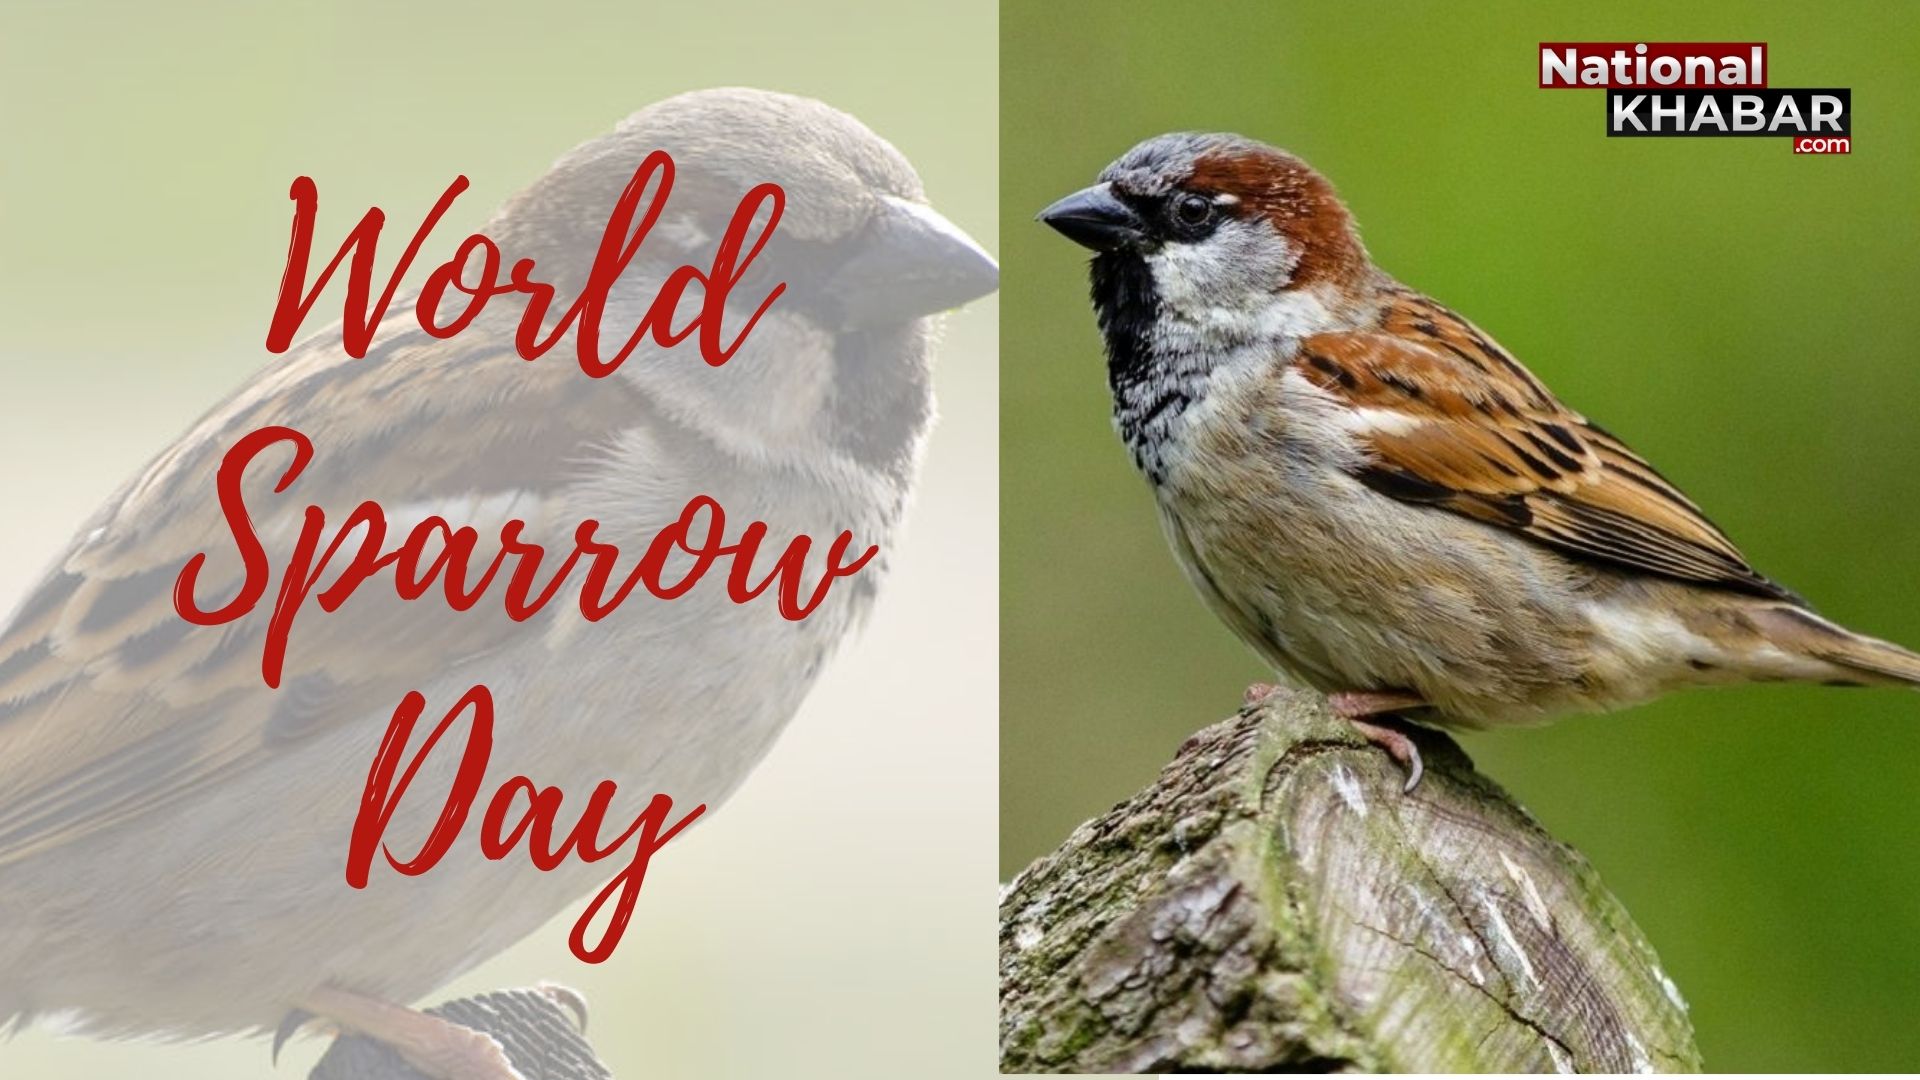 पर्यावरण का जीवंत बैरोमीटर है गौरैया, 20 मार्च को मनाया जाता है विश्व गौरैया दिवस